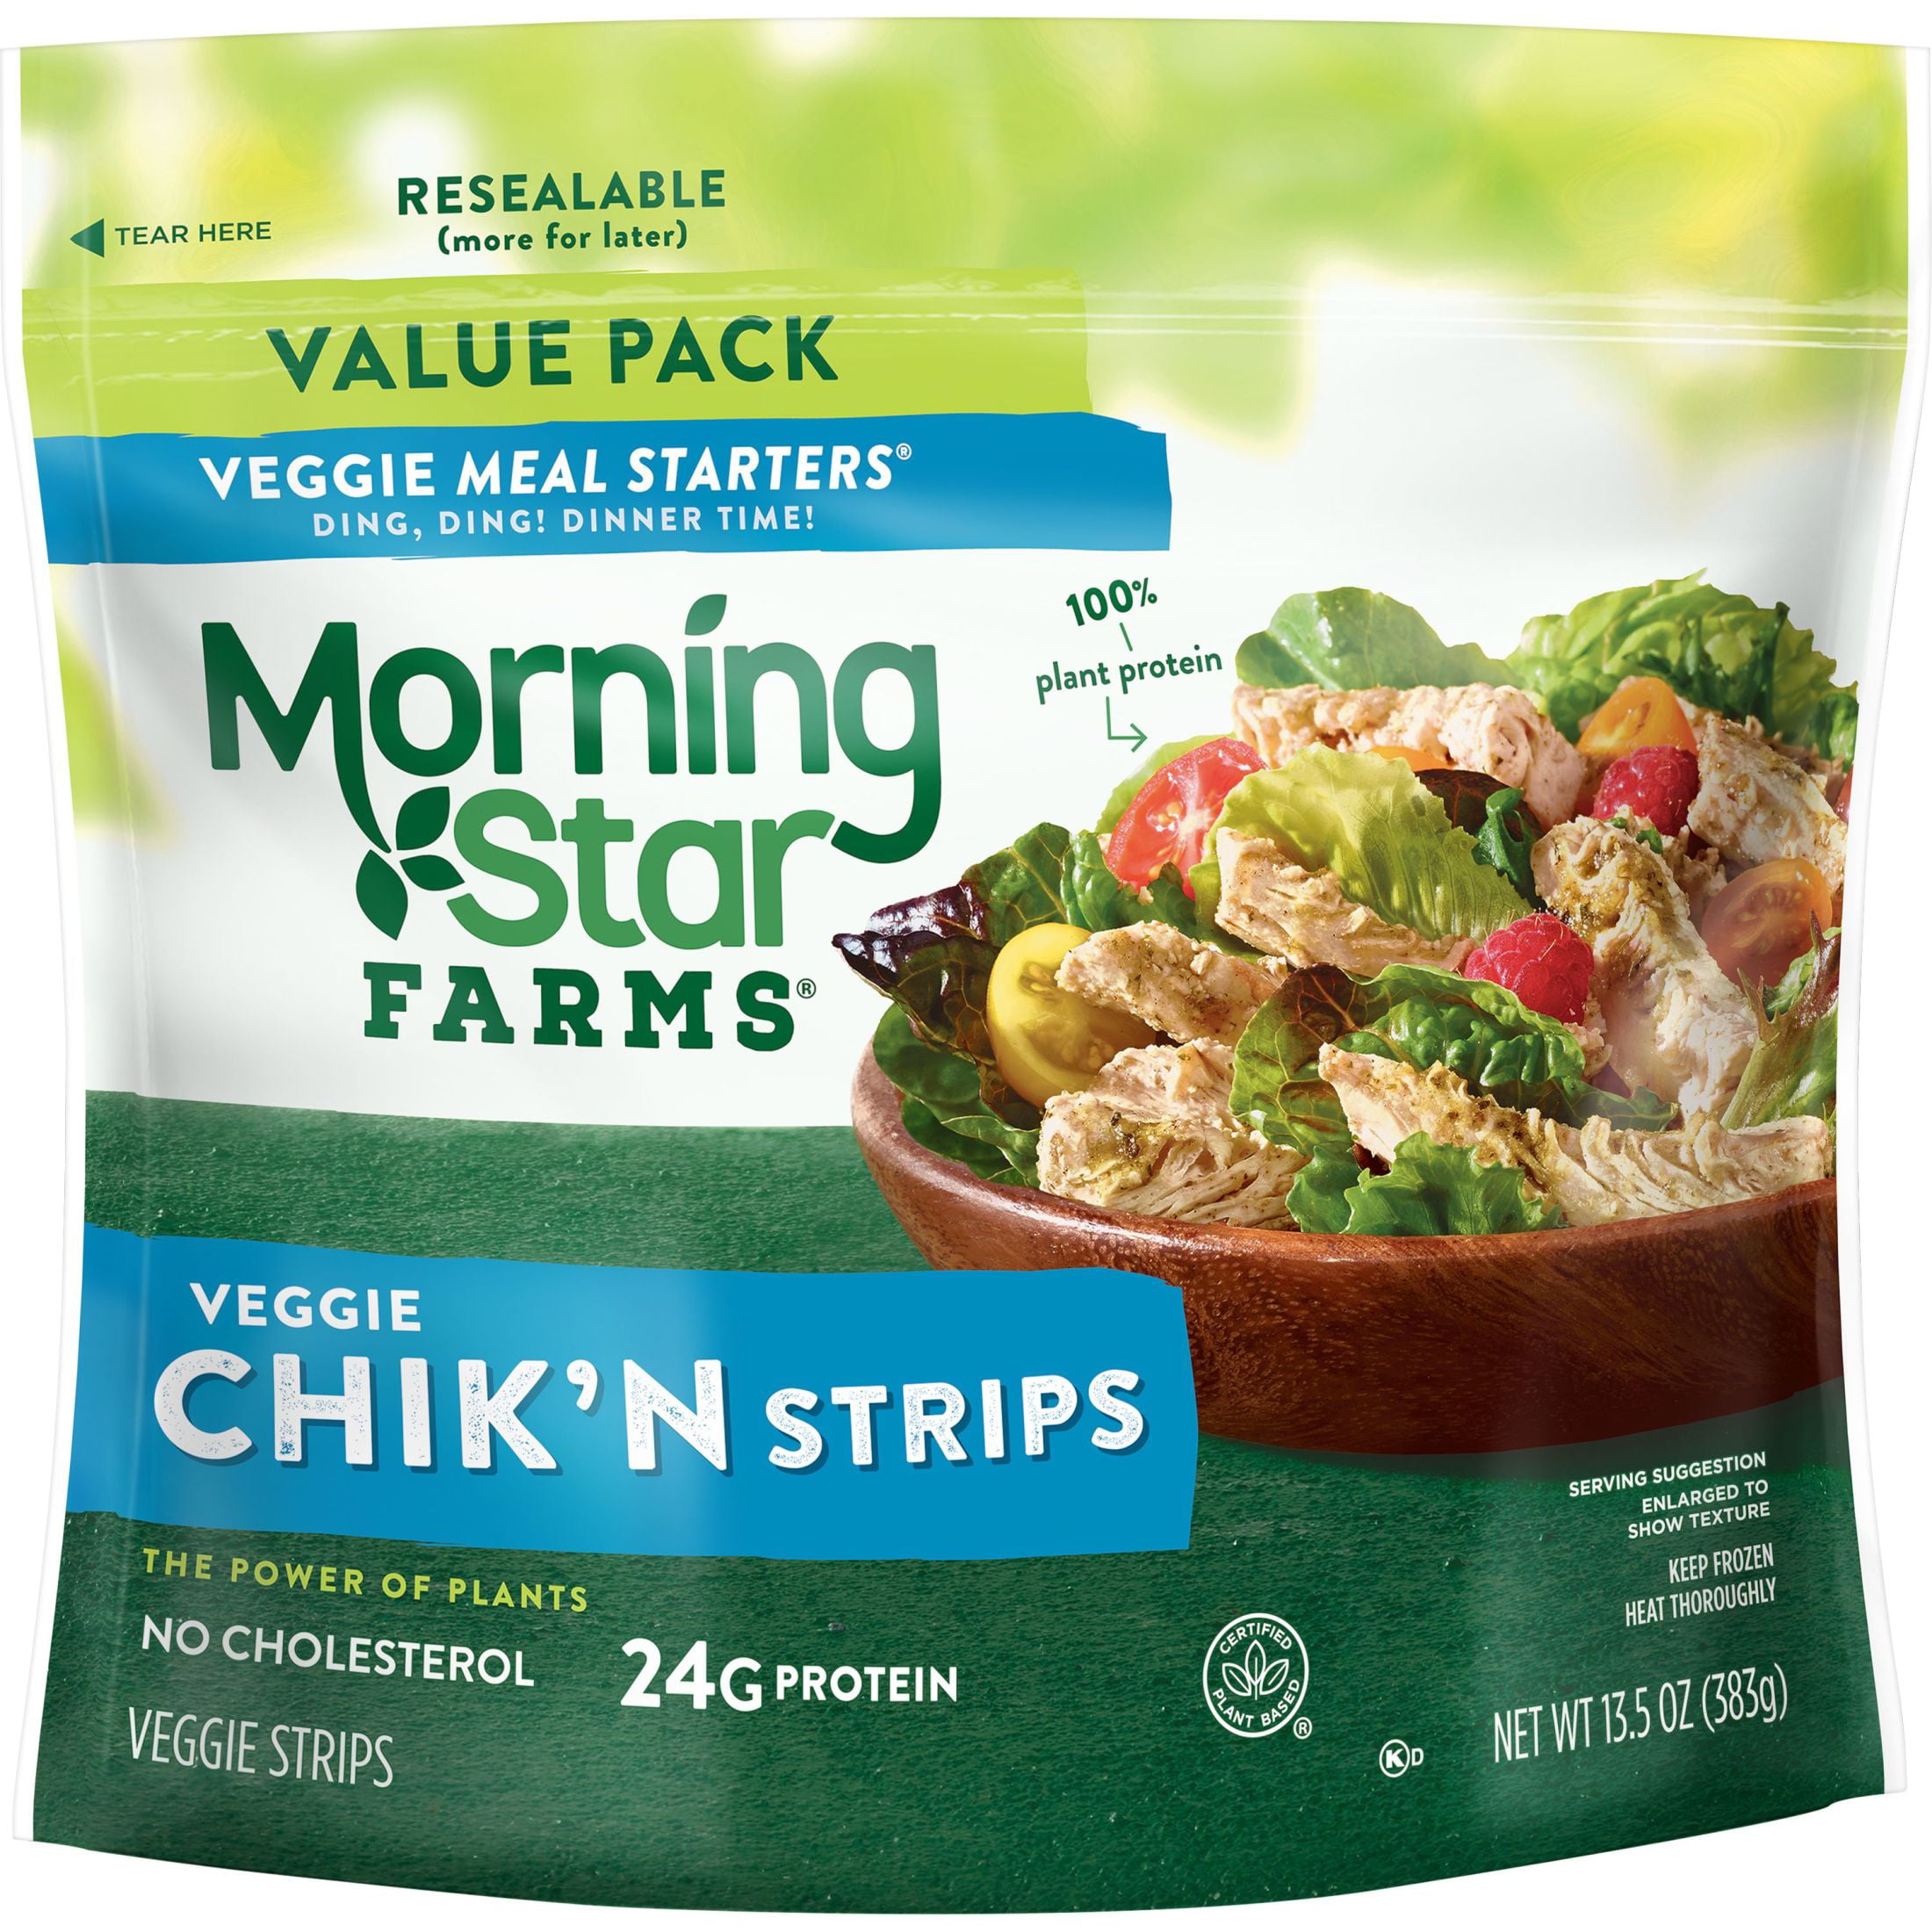 MorningStar Farms Meal Starters Original Meatless Chicken Strips, 13.5 oz (Frozen)